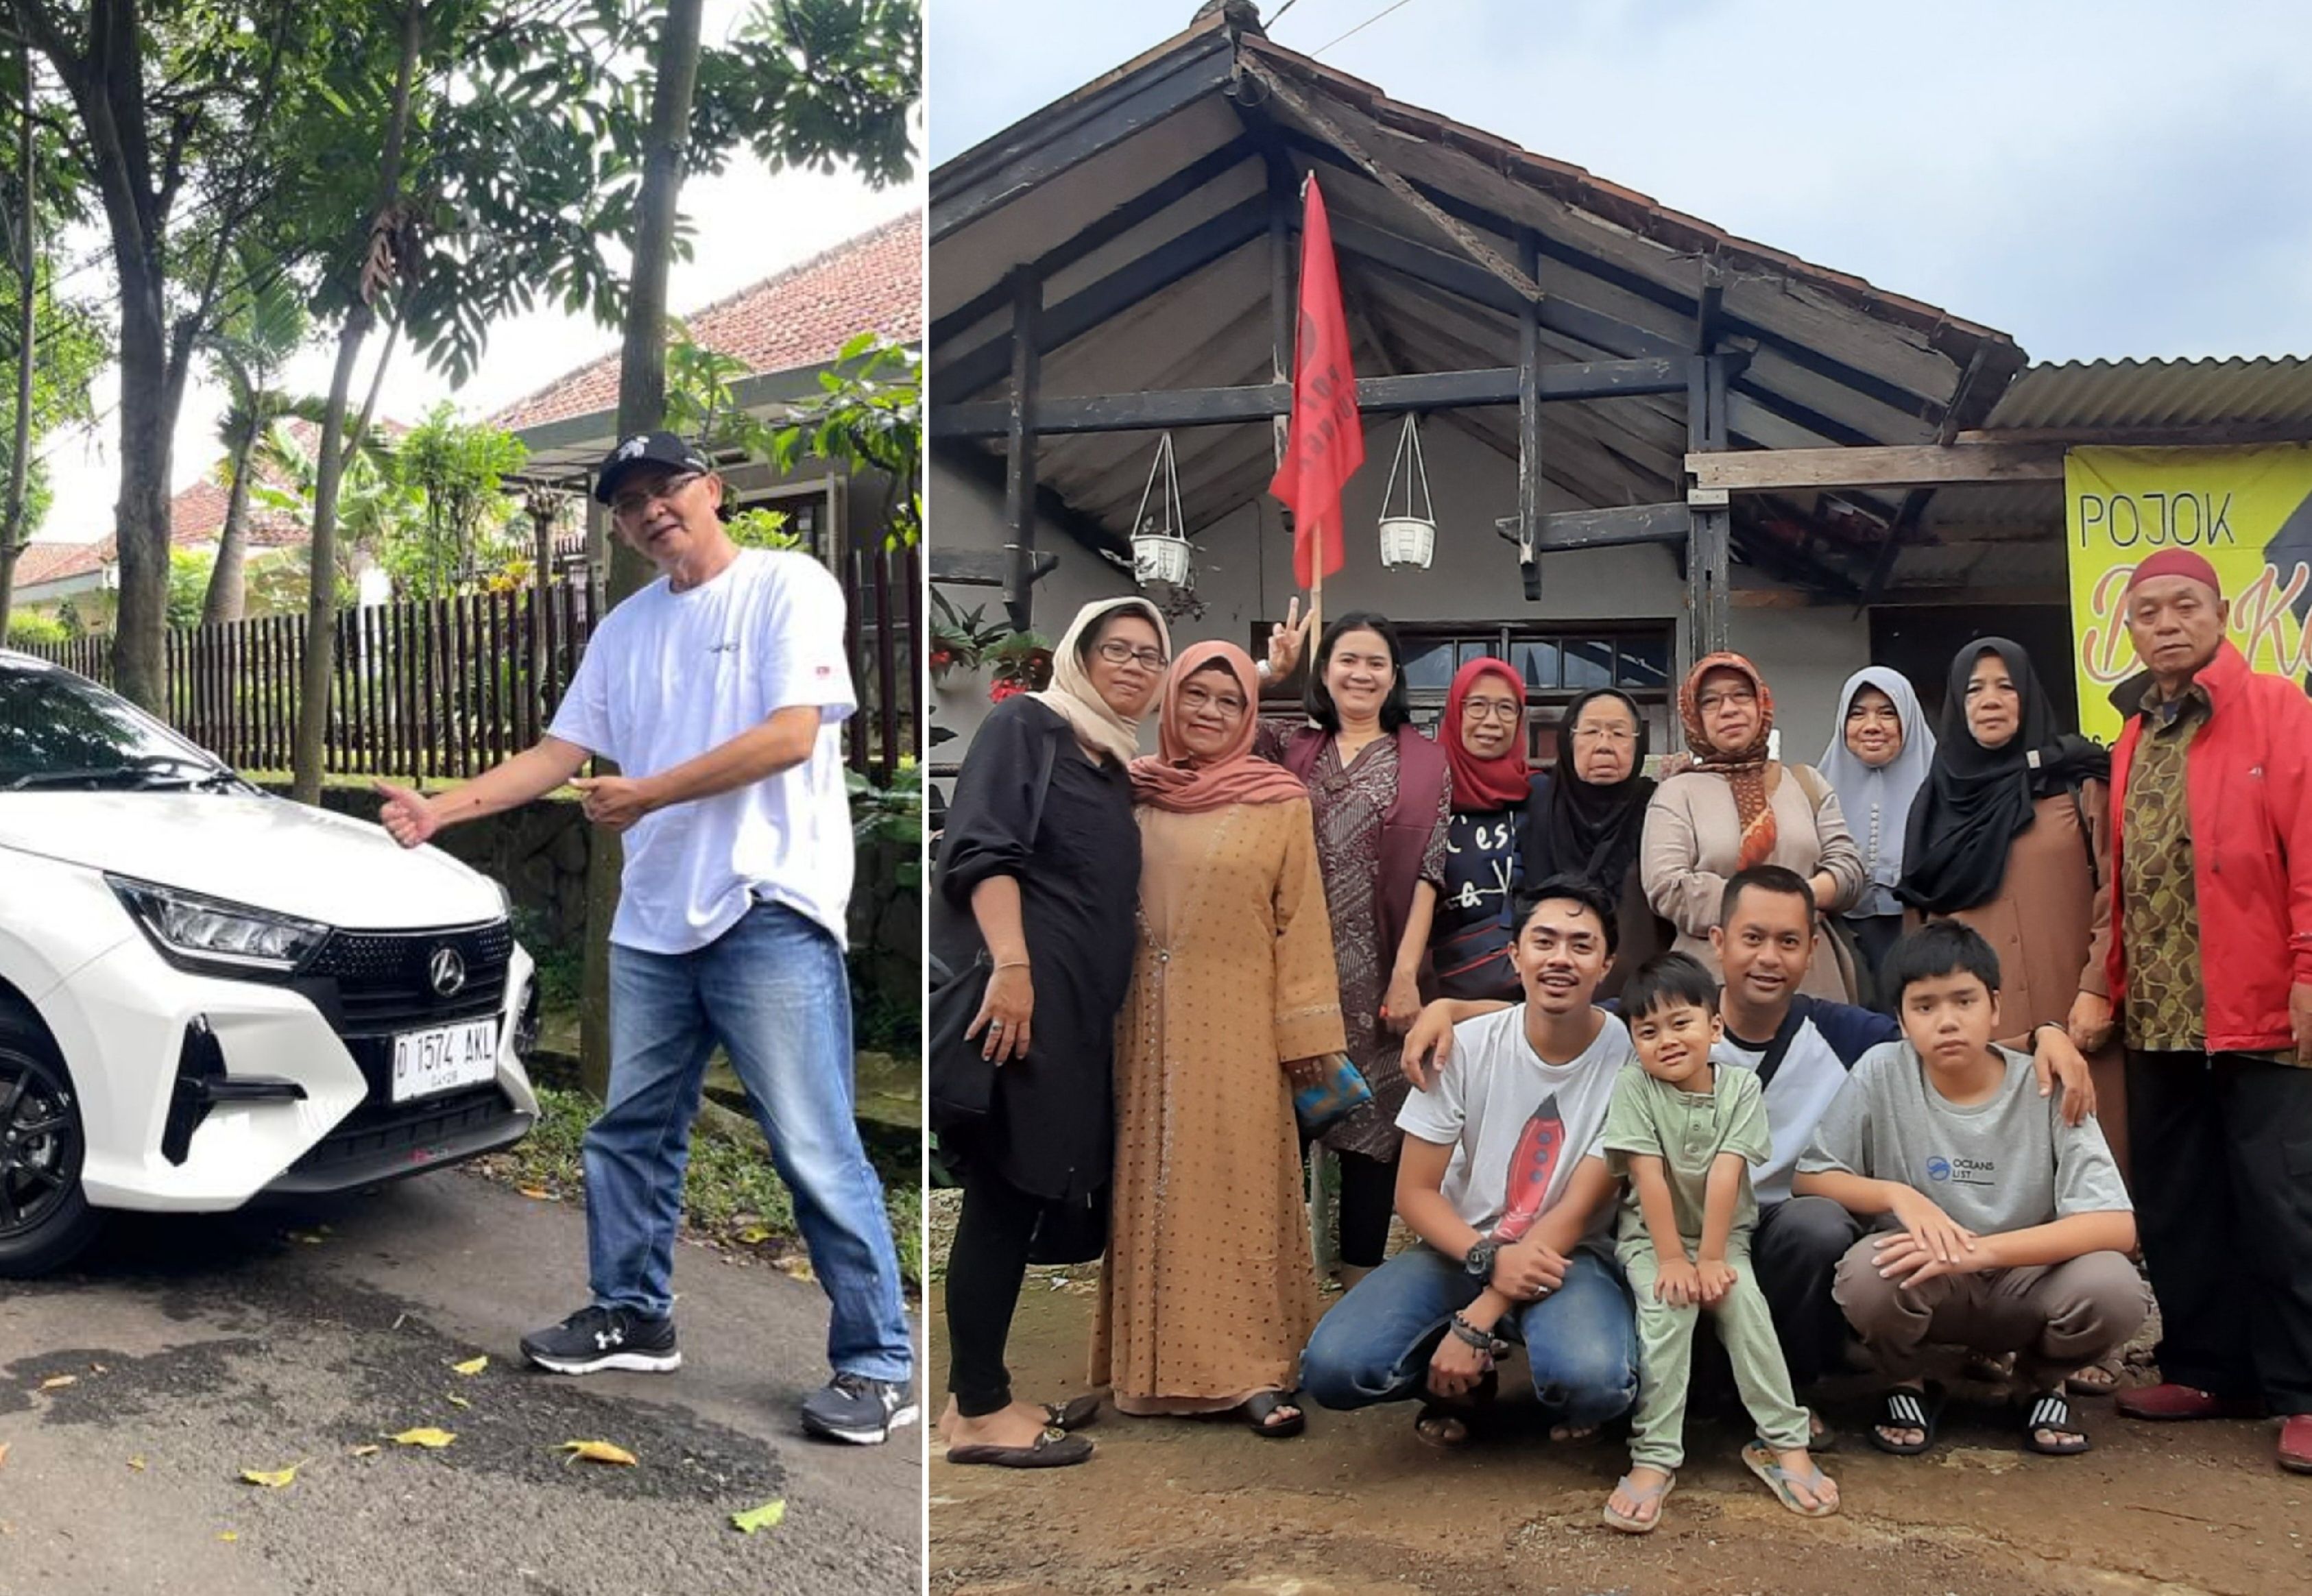 Melakukan mudik lokal ke Kecamatan Arjasari, Kabupaten Bandung, dengan menggunakan unit All New Astra Daihatsu Ayla dan satu   unit Daihatsu Sigra, membuat suasana Idul Fitri semakin ceria dan bermakna.*/  